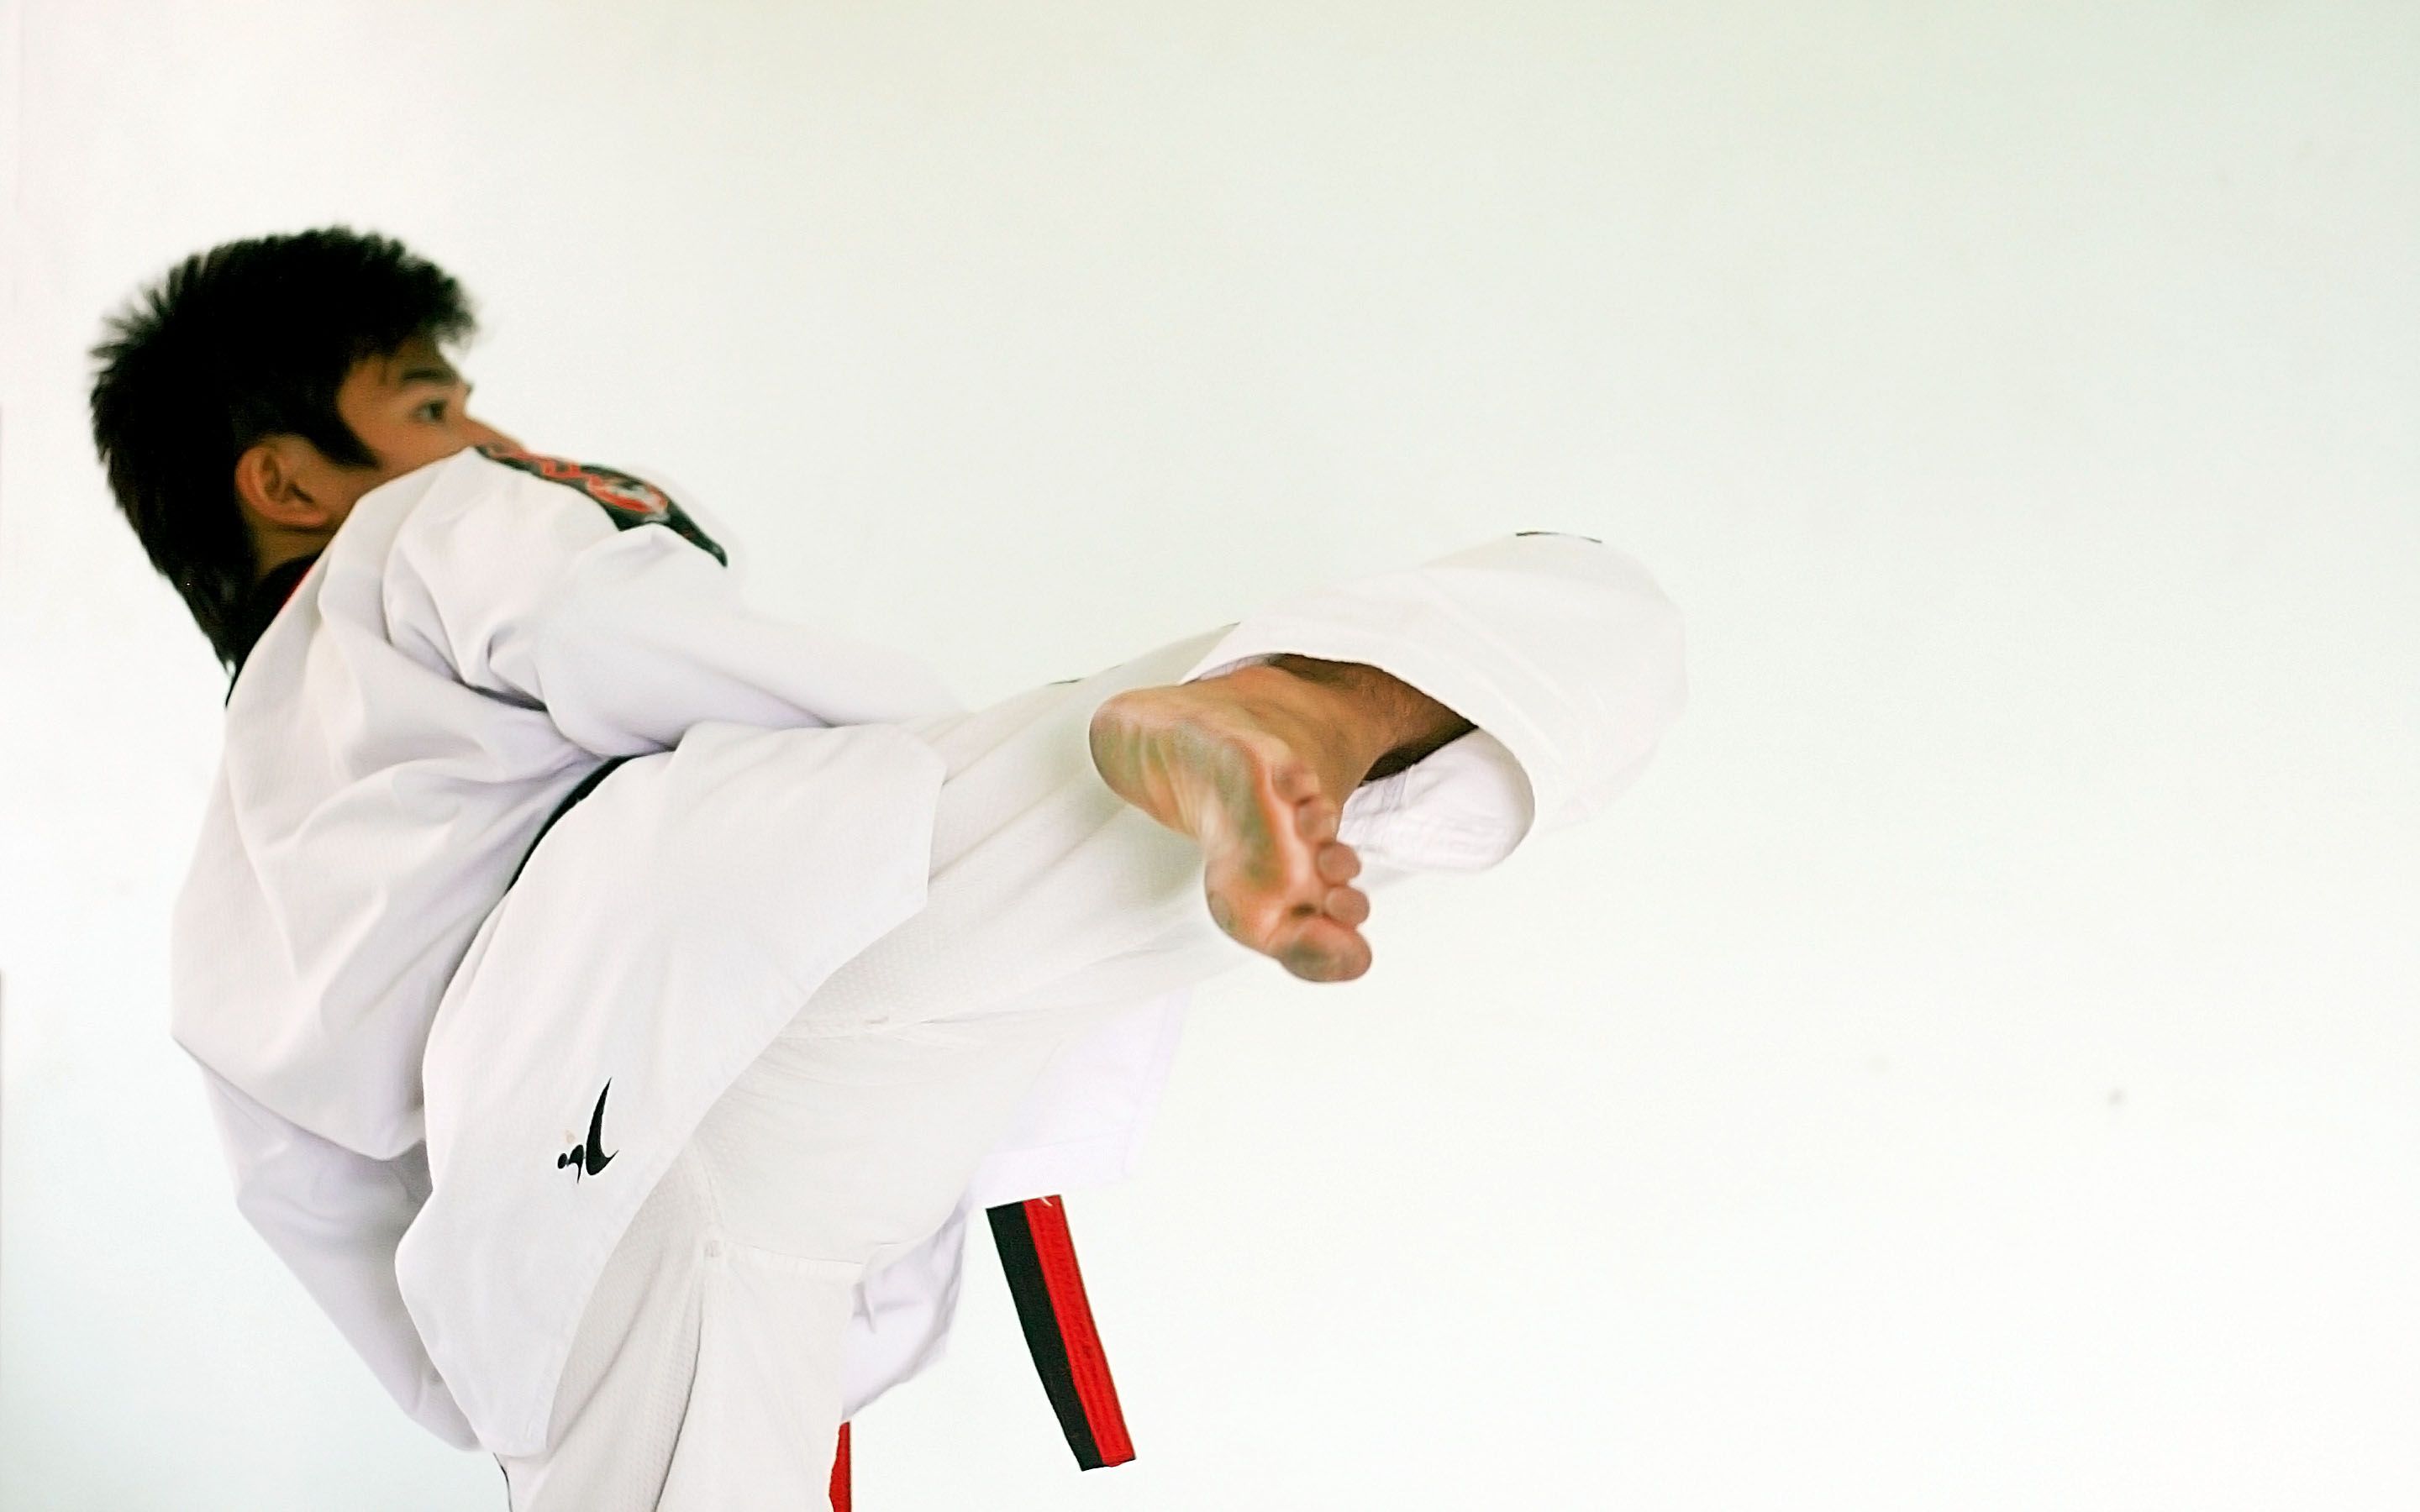 karate kick wallpaper, martial arts uniform, karate, taekwondo, judo, hapkido, kick, tang soo do, jujutsu, dobok, martial arts